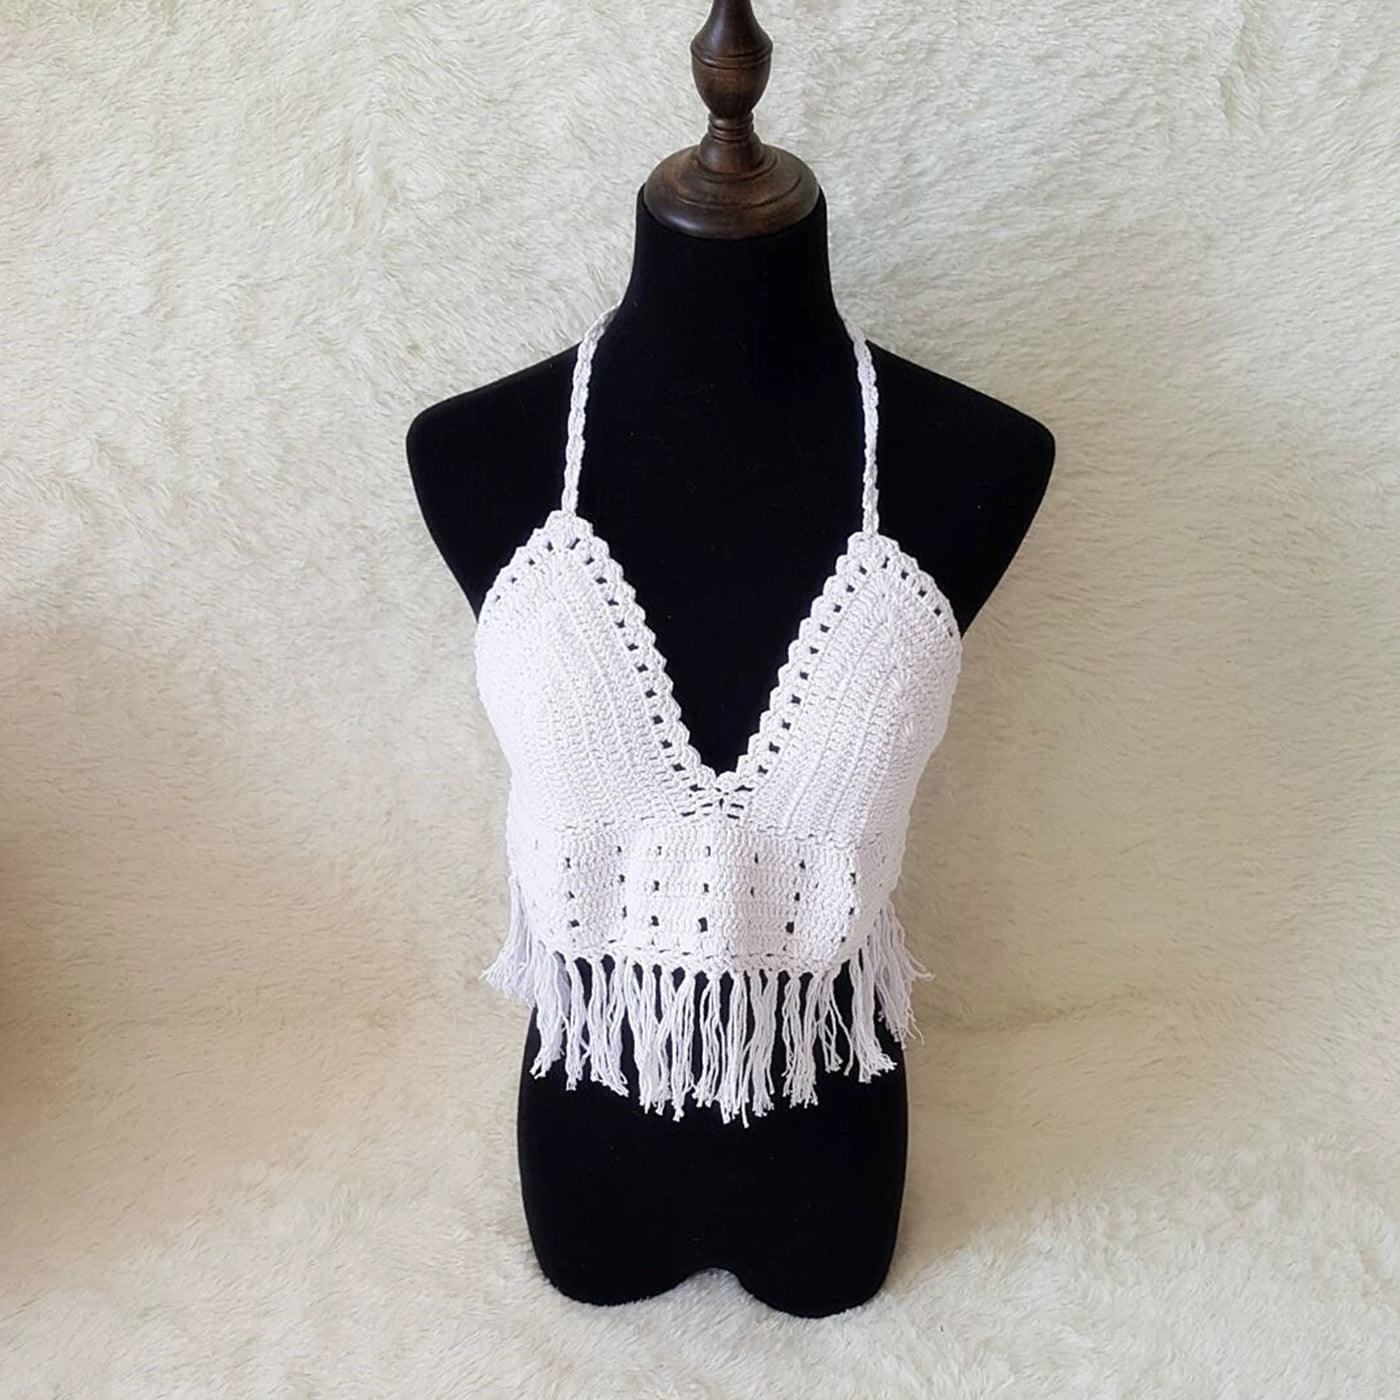 Luminous Fringe Cover-Up & Crochet Bikini - BlingBlingYarn